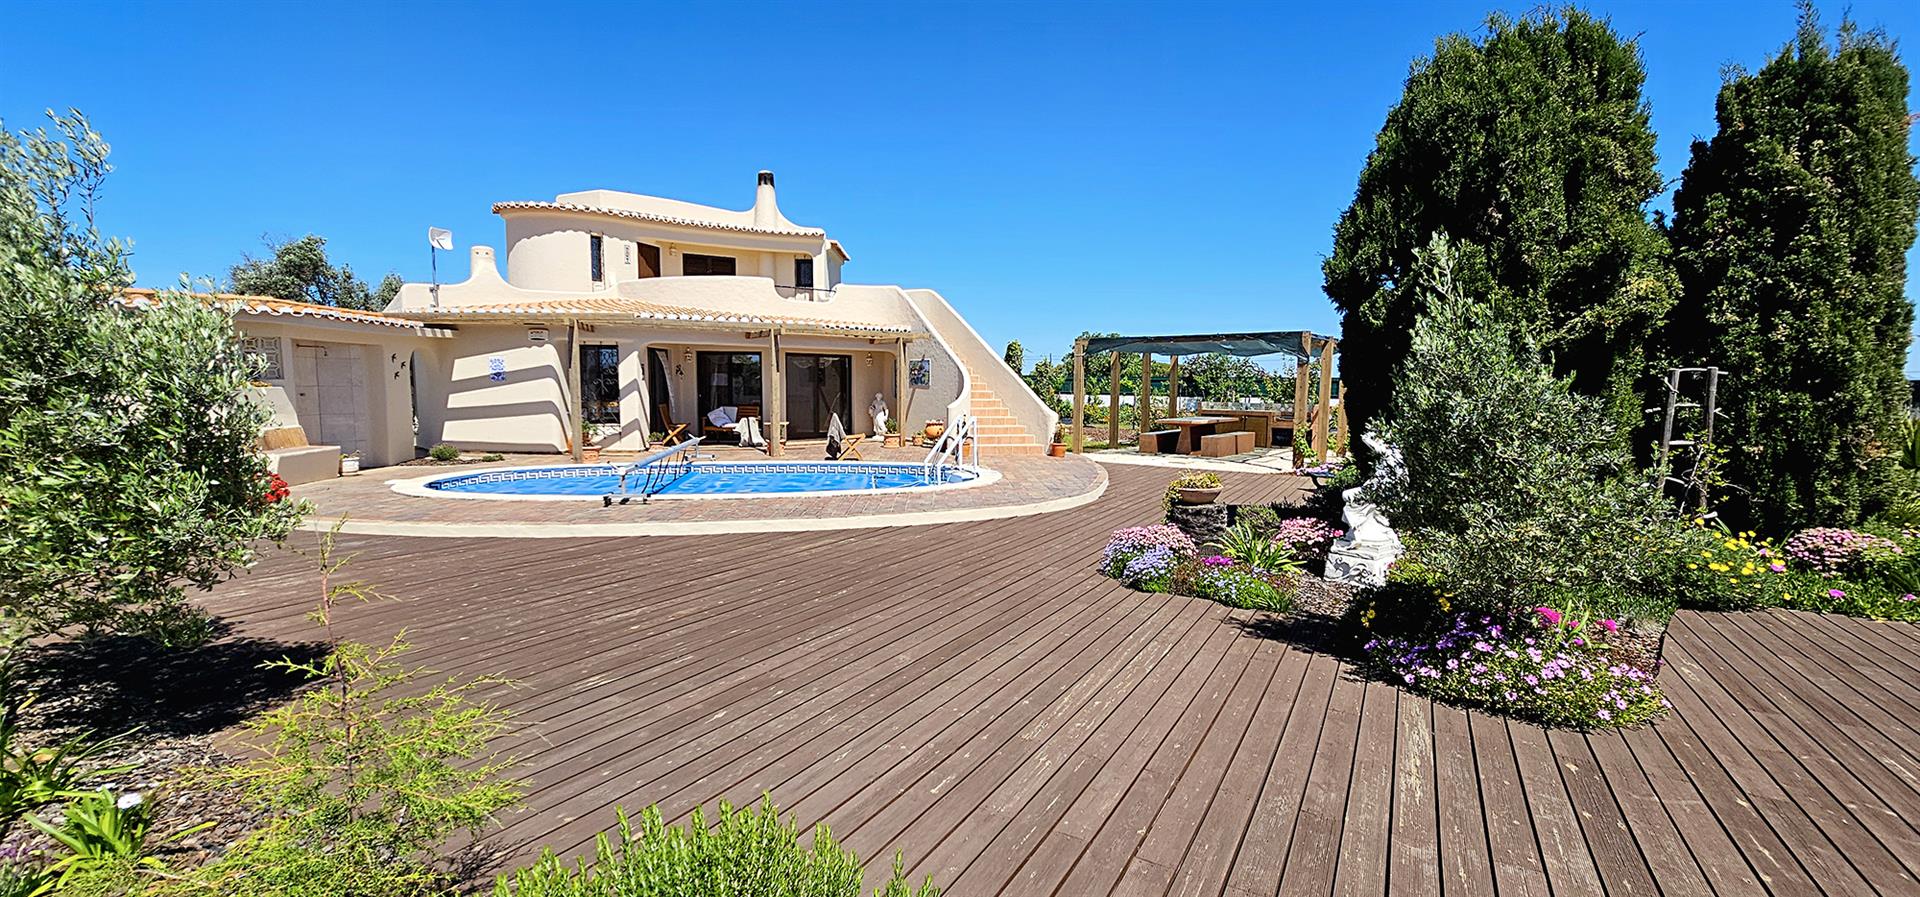 Tervetuloa tulevaan kotiisi kauniissa Algarvessa